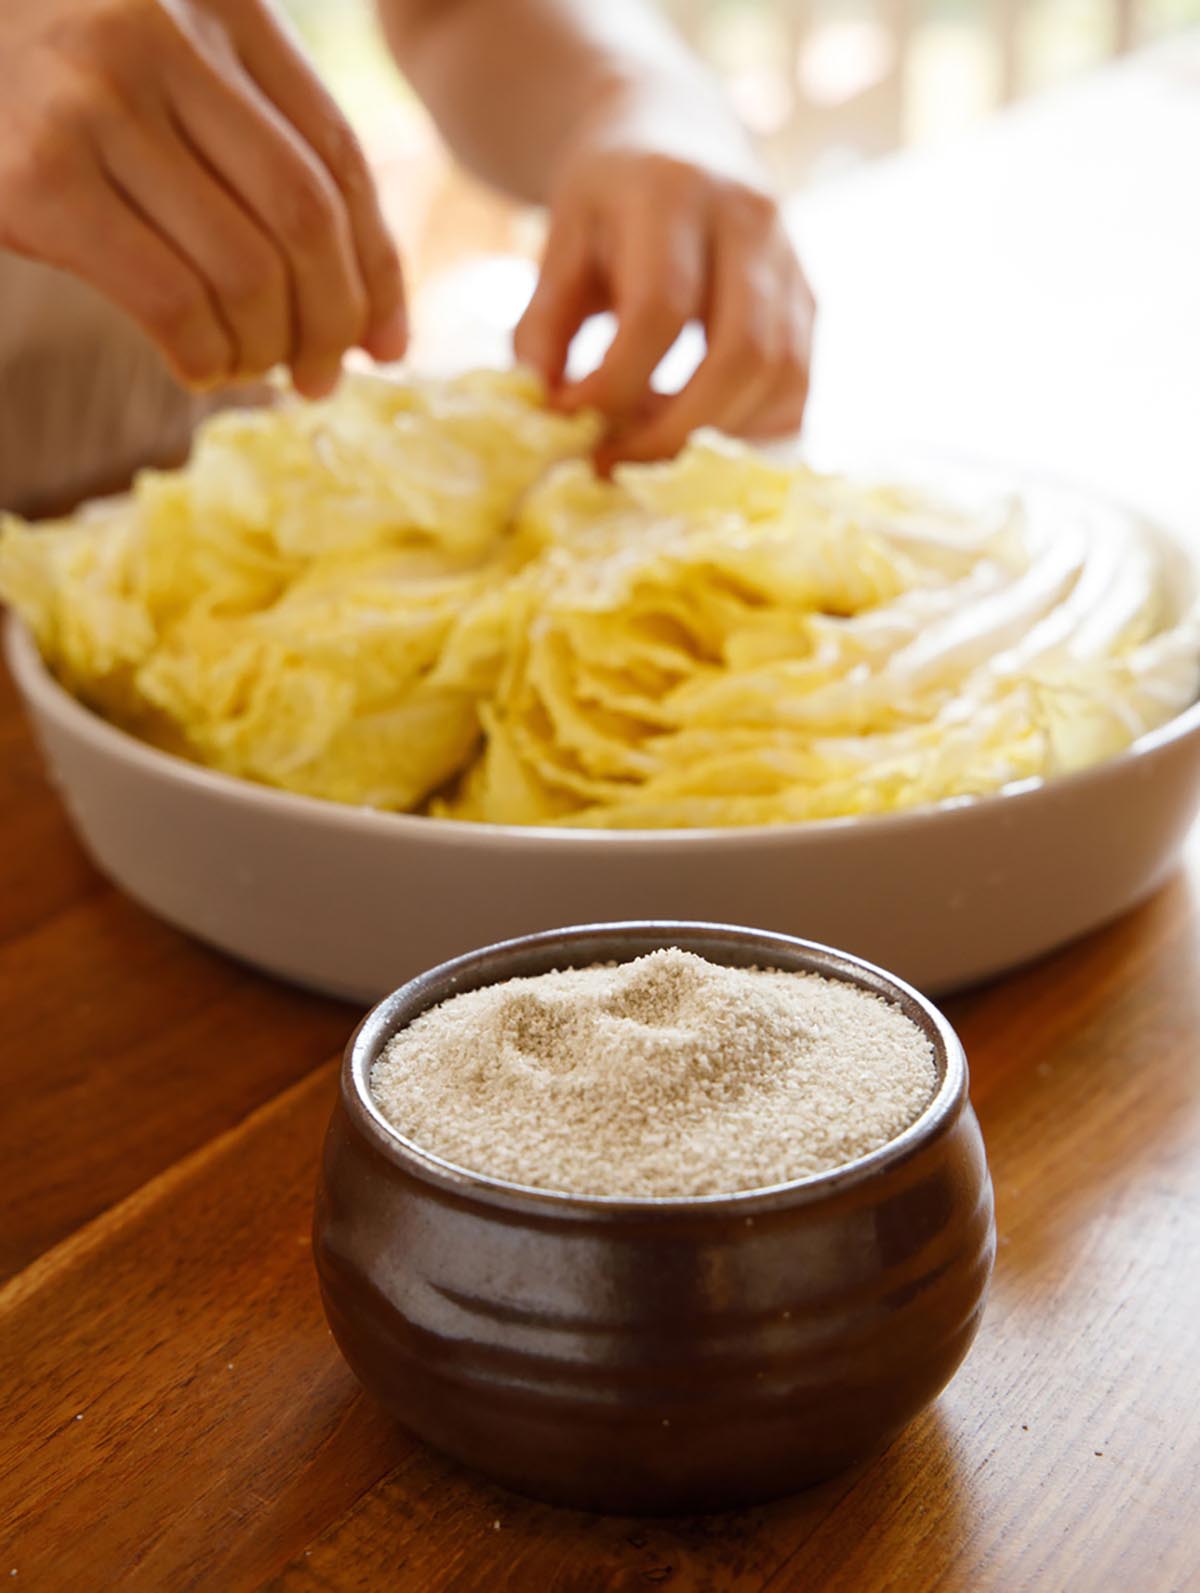 그릇에 소금이 수북히 담아져 있고,그 뒤로는 노란배추를 소금으로 절이는 모습이 있다.